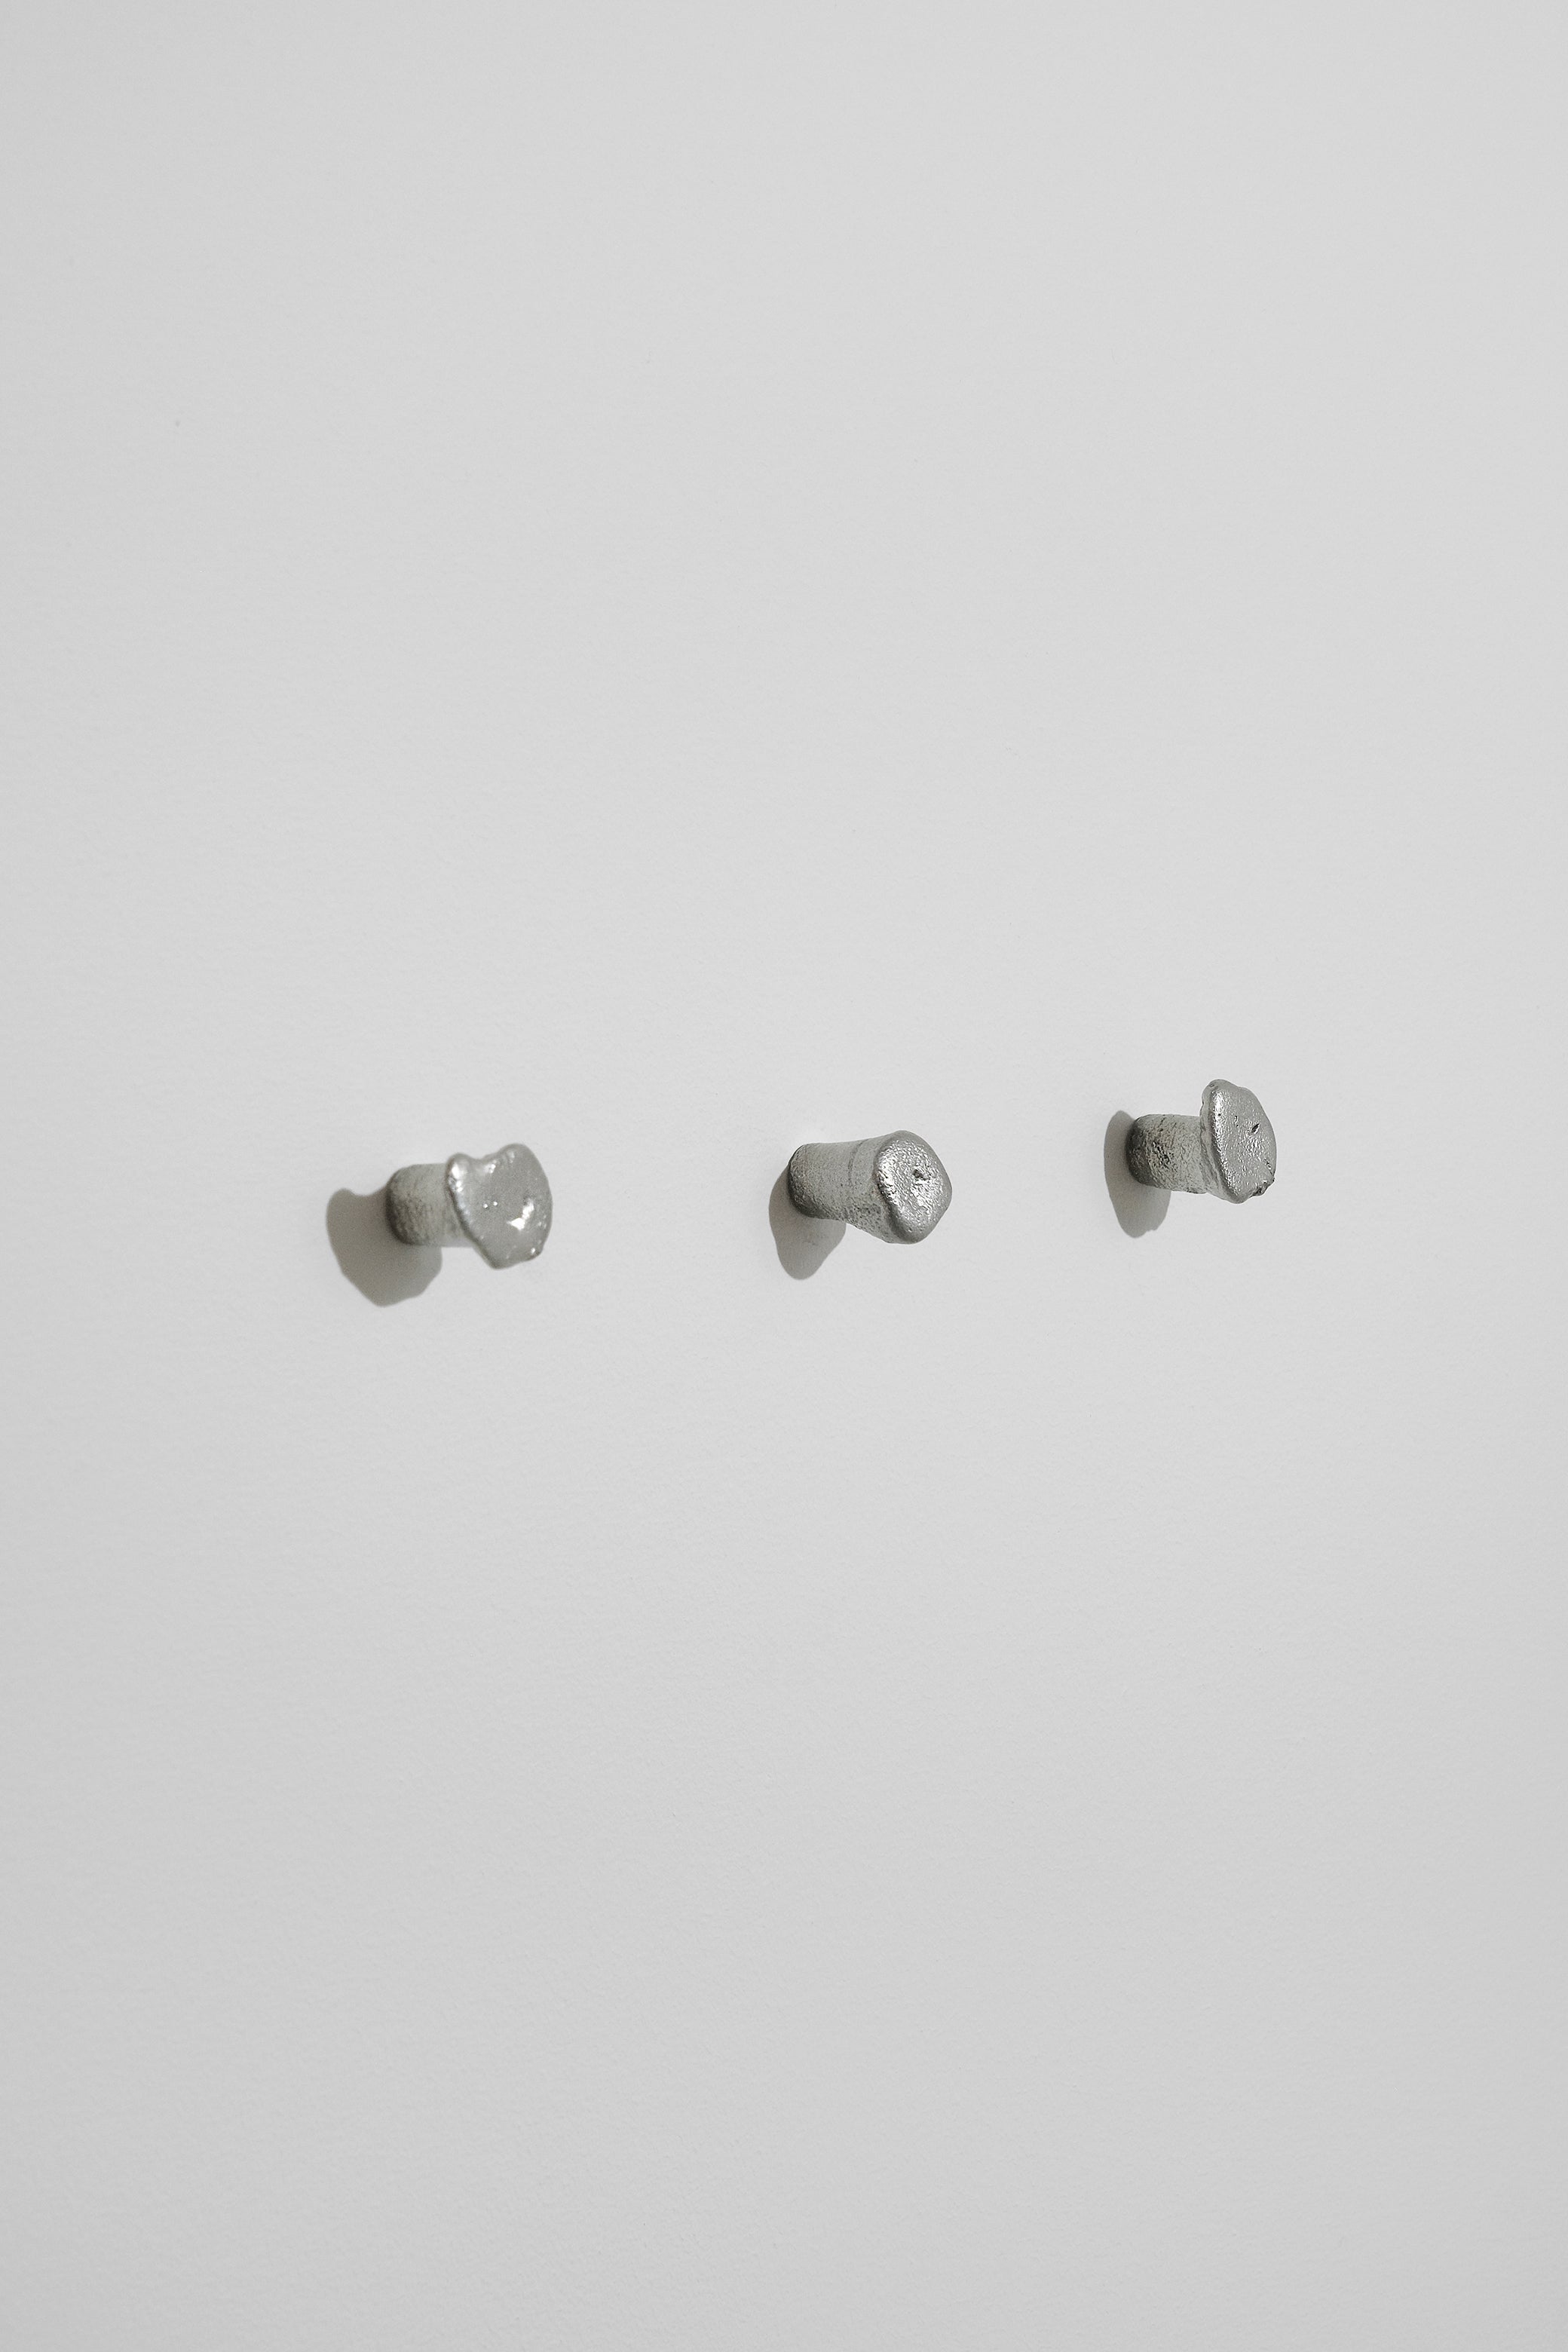 Tin wall knob-Alfred Sahlén-KIOSK48TH